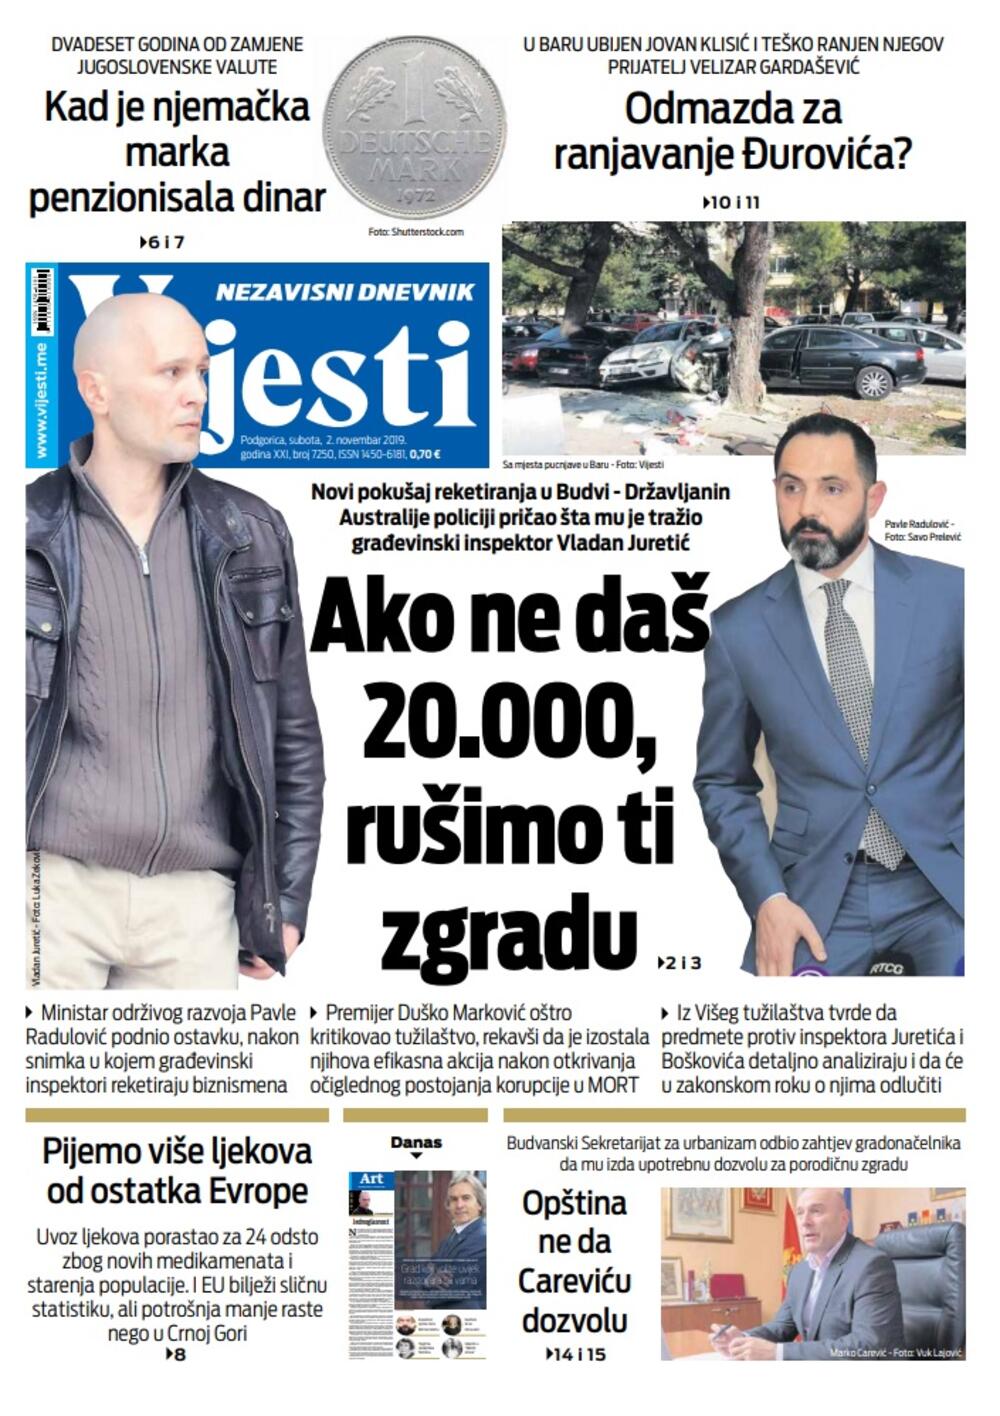 Naslovna strana "Vijesti" za 2. novembar 2019.